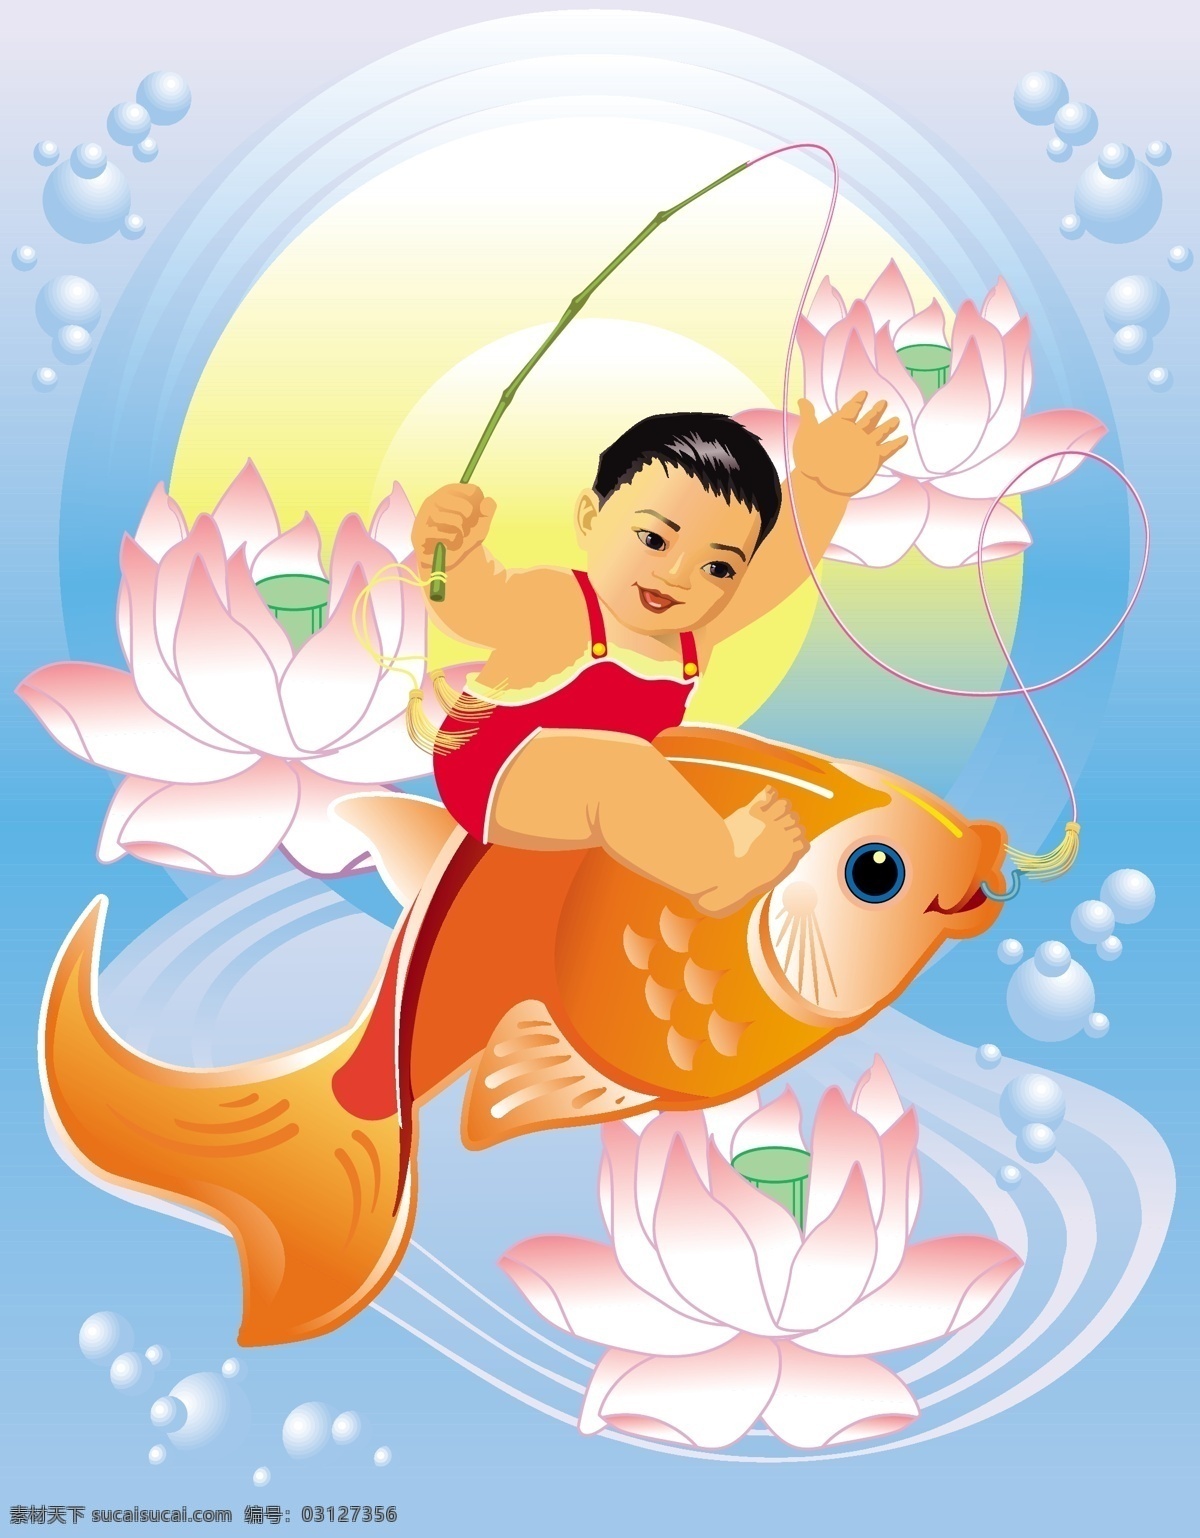 中国 风 吉祥 年画 矢量 eps格式 传统 钓鱼 荷花 金鱼 人物 矢量素材 小孩 中国风 鱼类 矢量图 其他矢量图